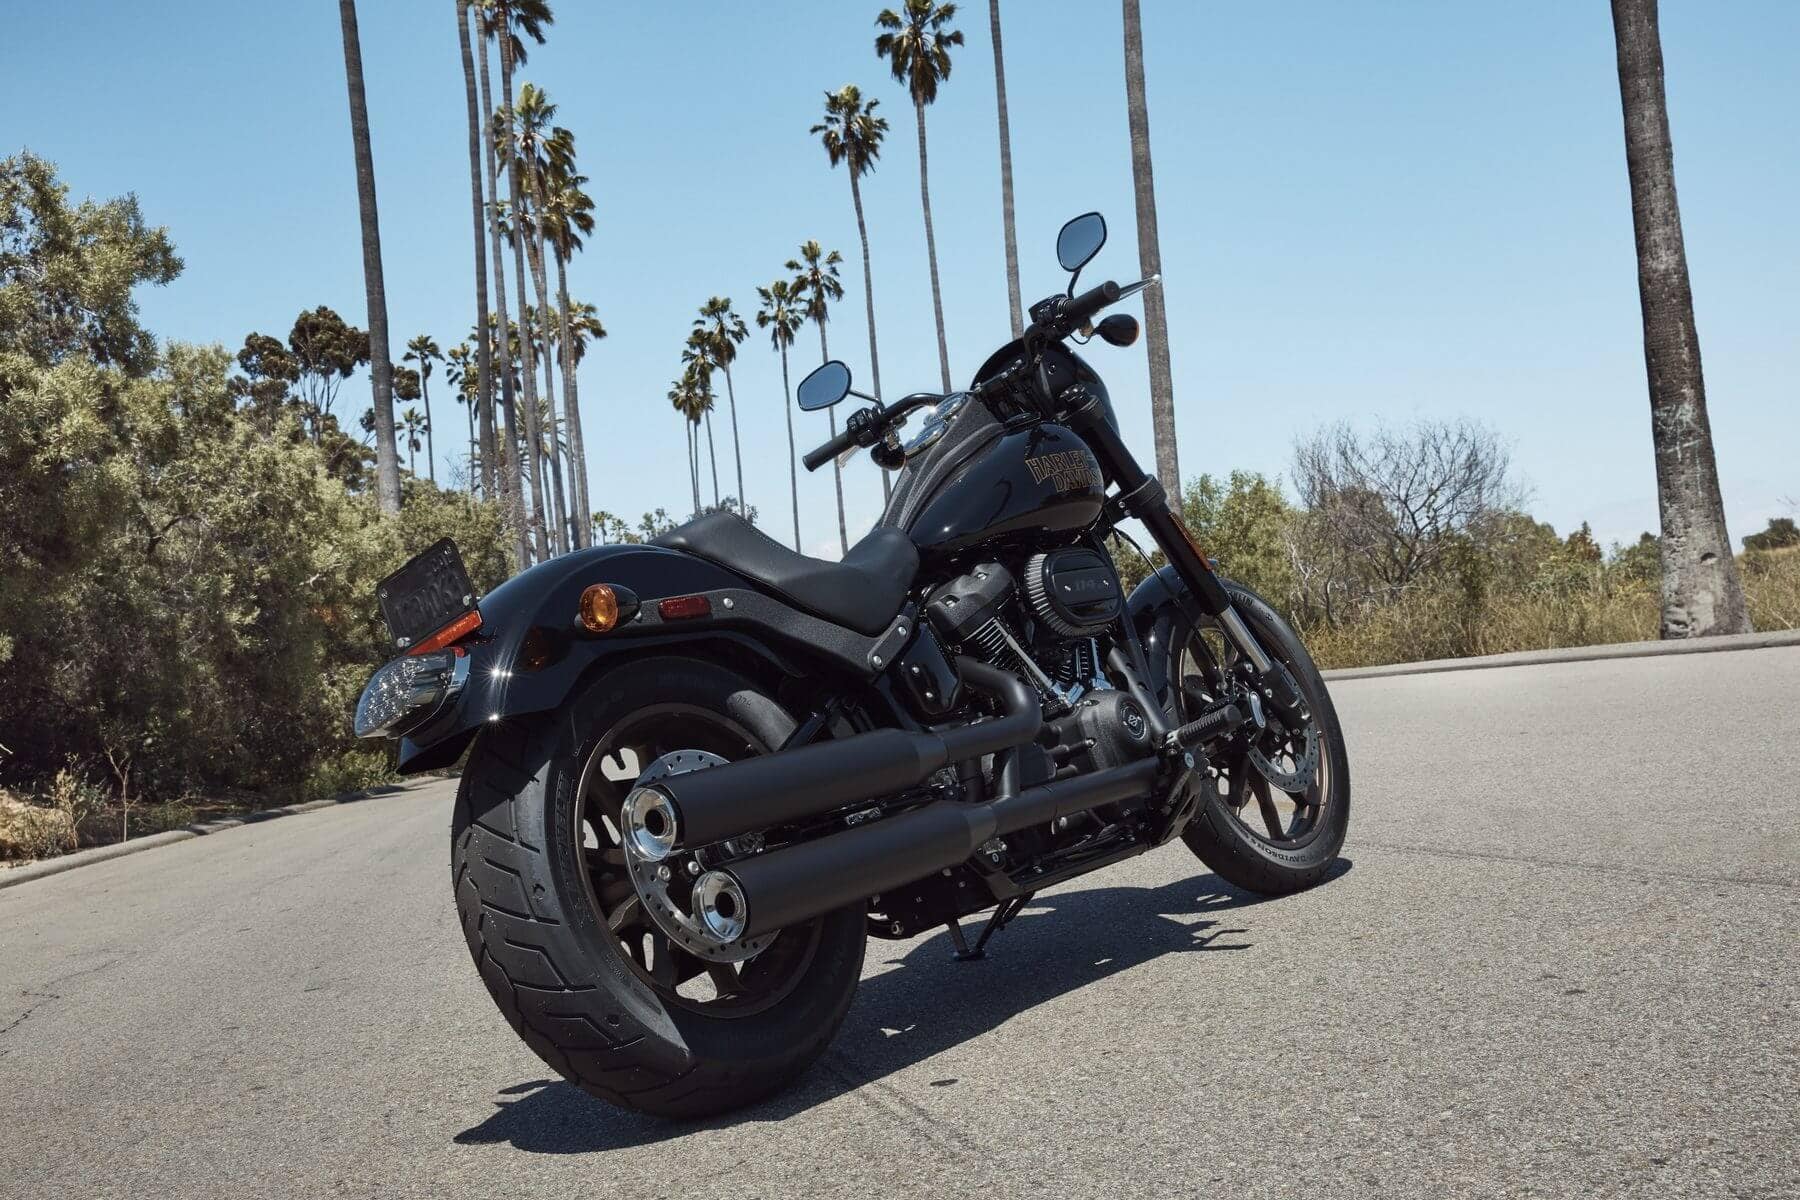 Harley Neufahrzeug Auslieferung - Follower gönnt sich Low Rider S